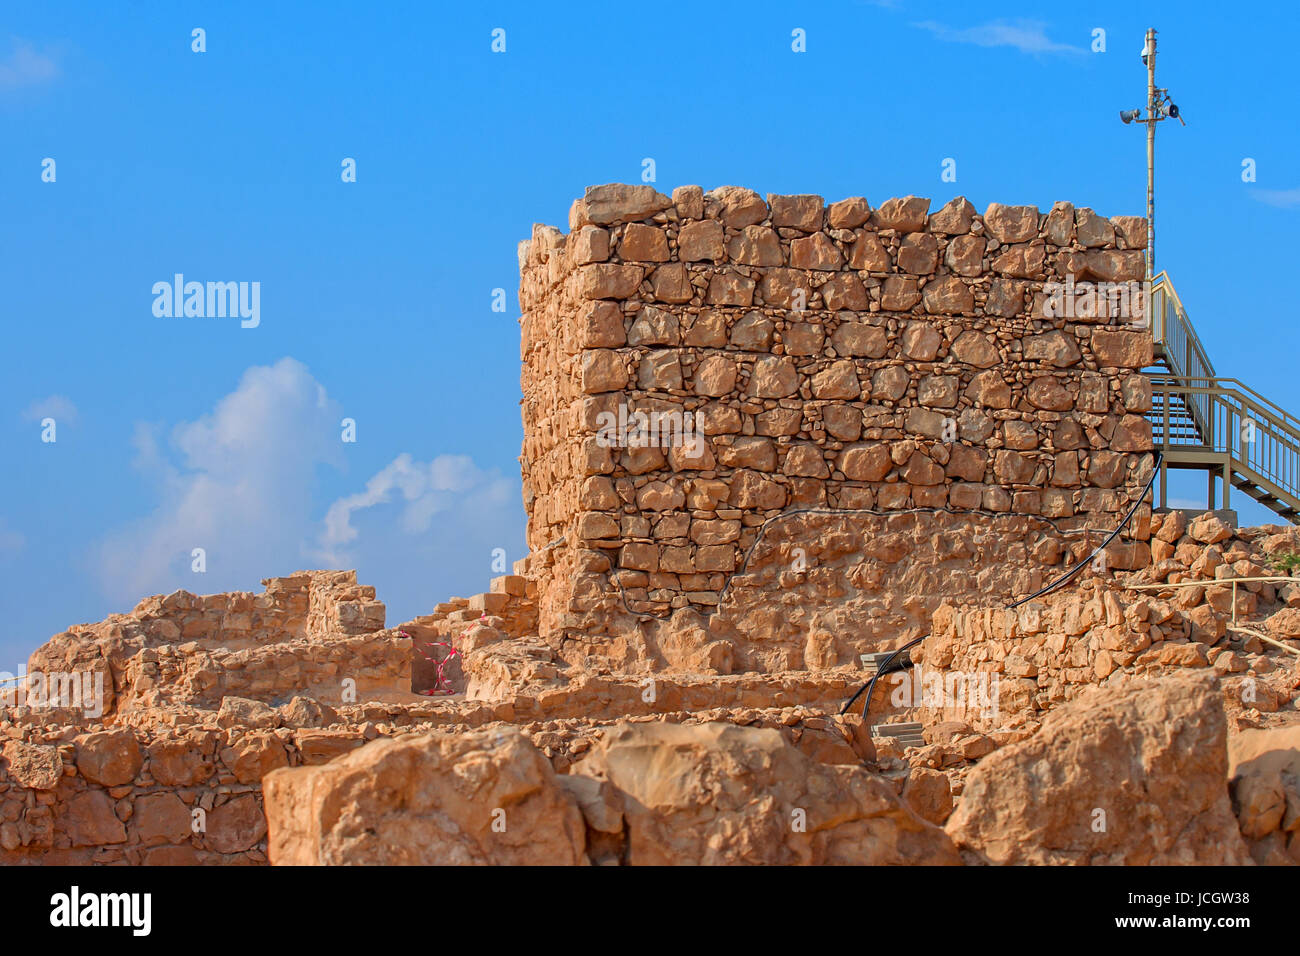 Ruins of Masada fortress, Israel Stock Photo